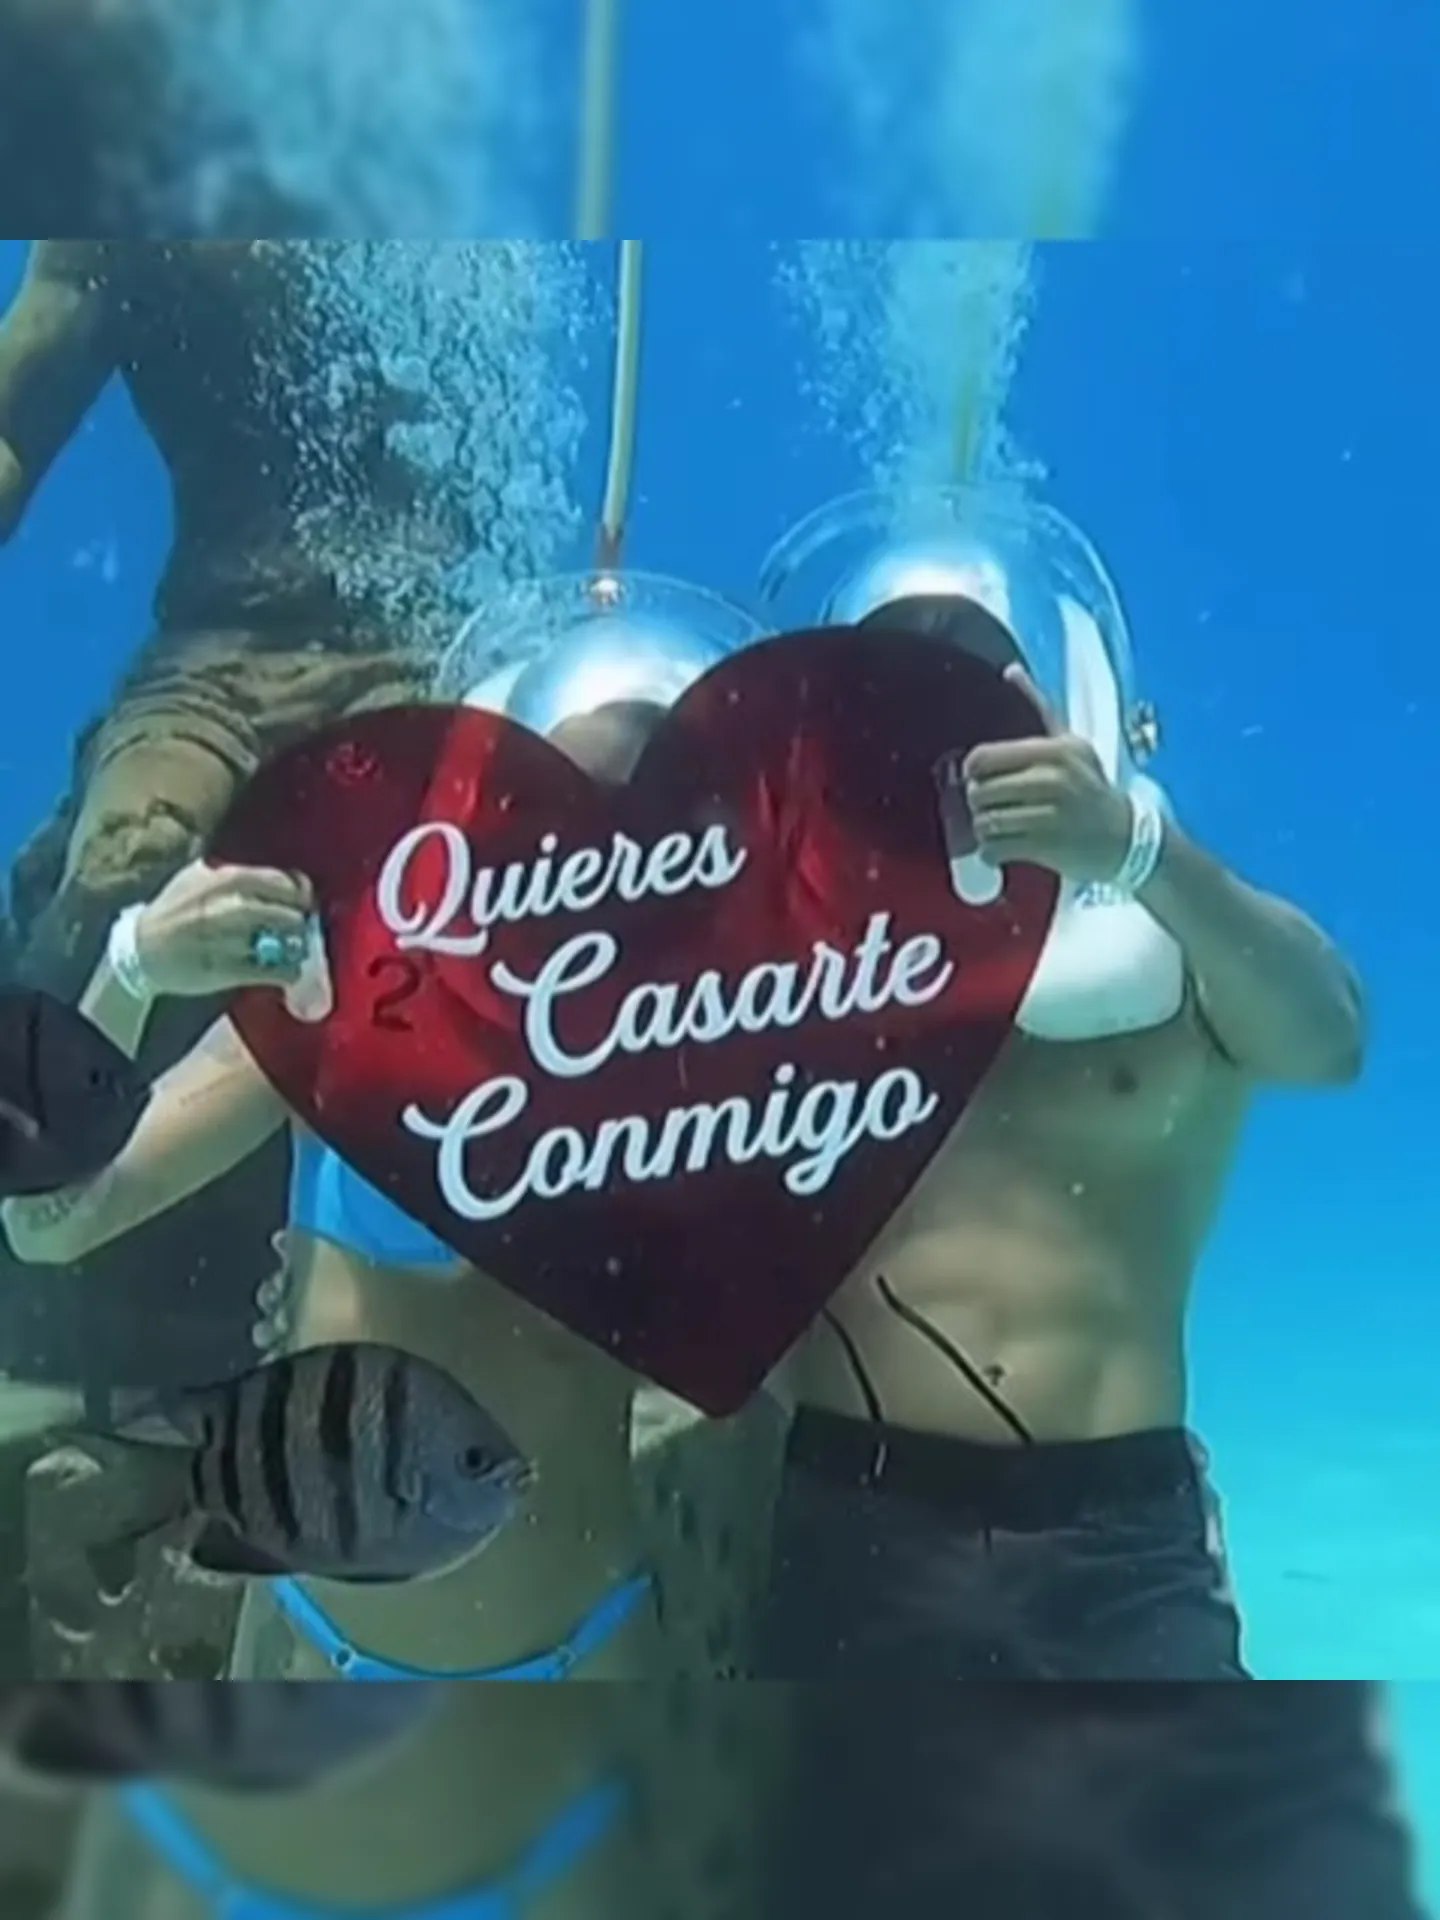 Thiago fez o pedido com uma placa em formato de coração